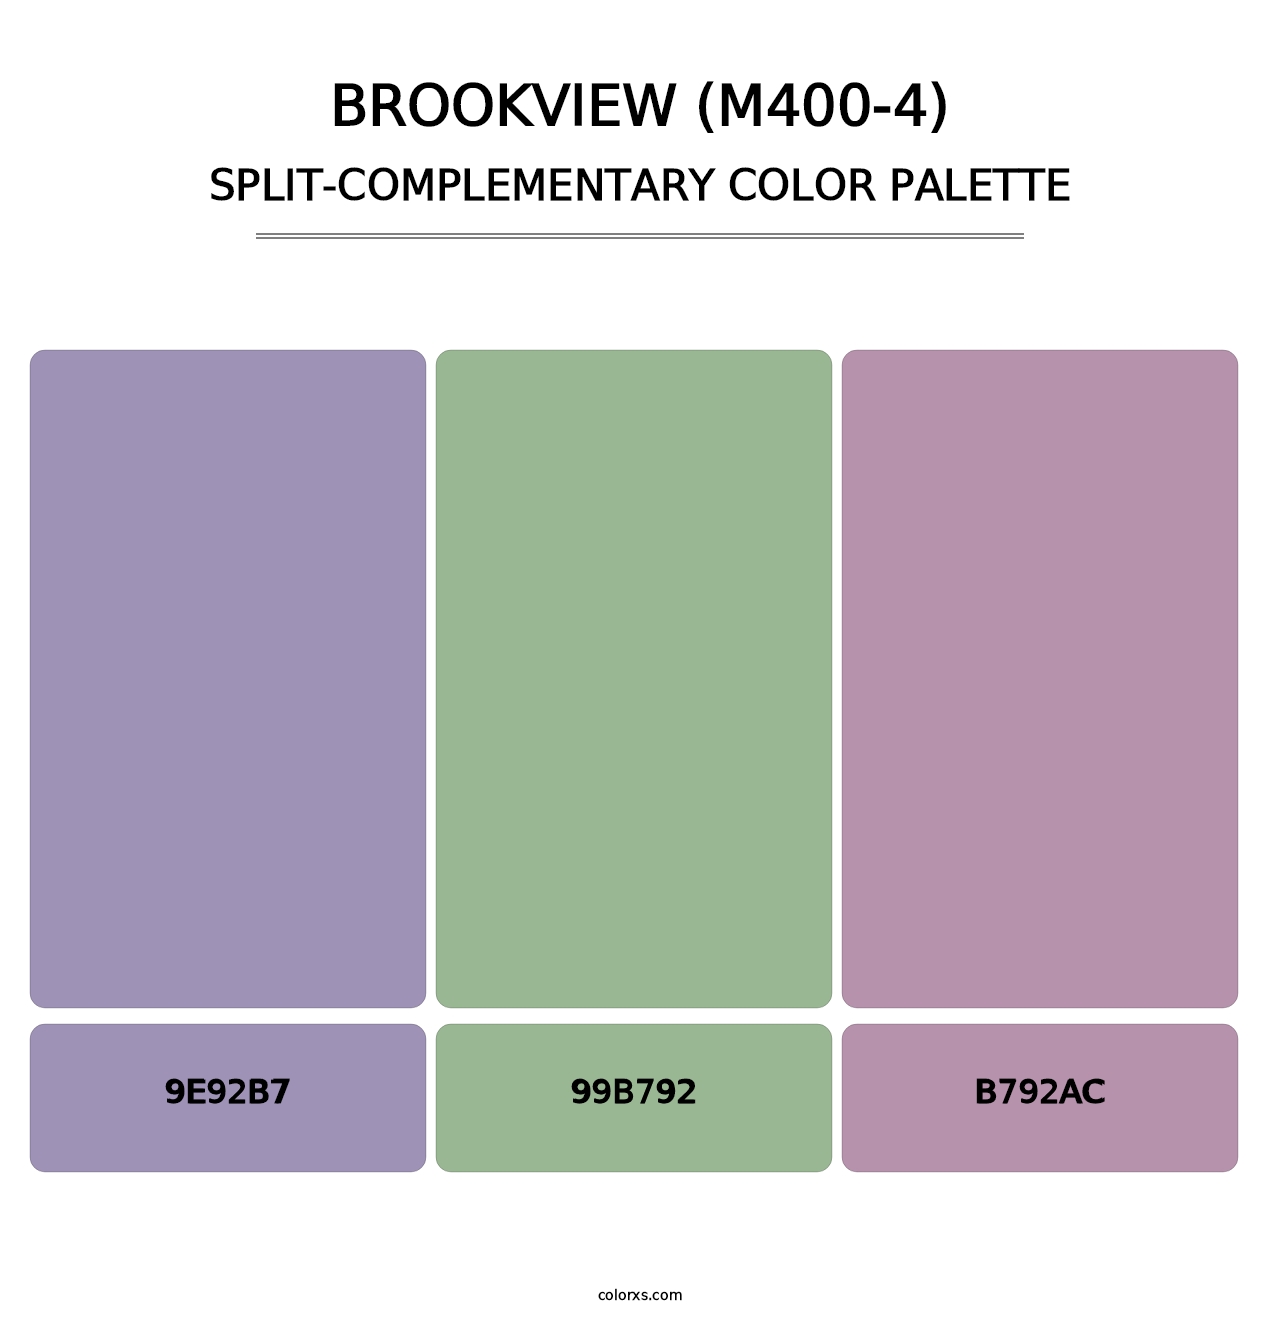 Brookview (M400-4) - Split-Complementary Color Palette